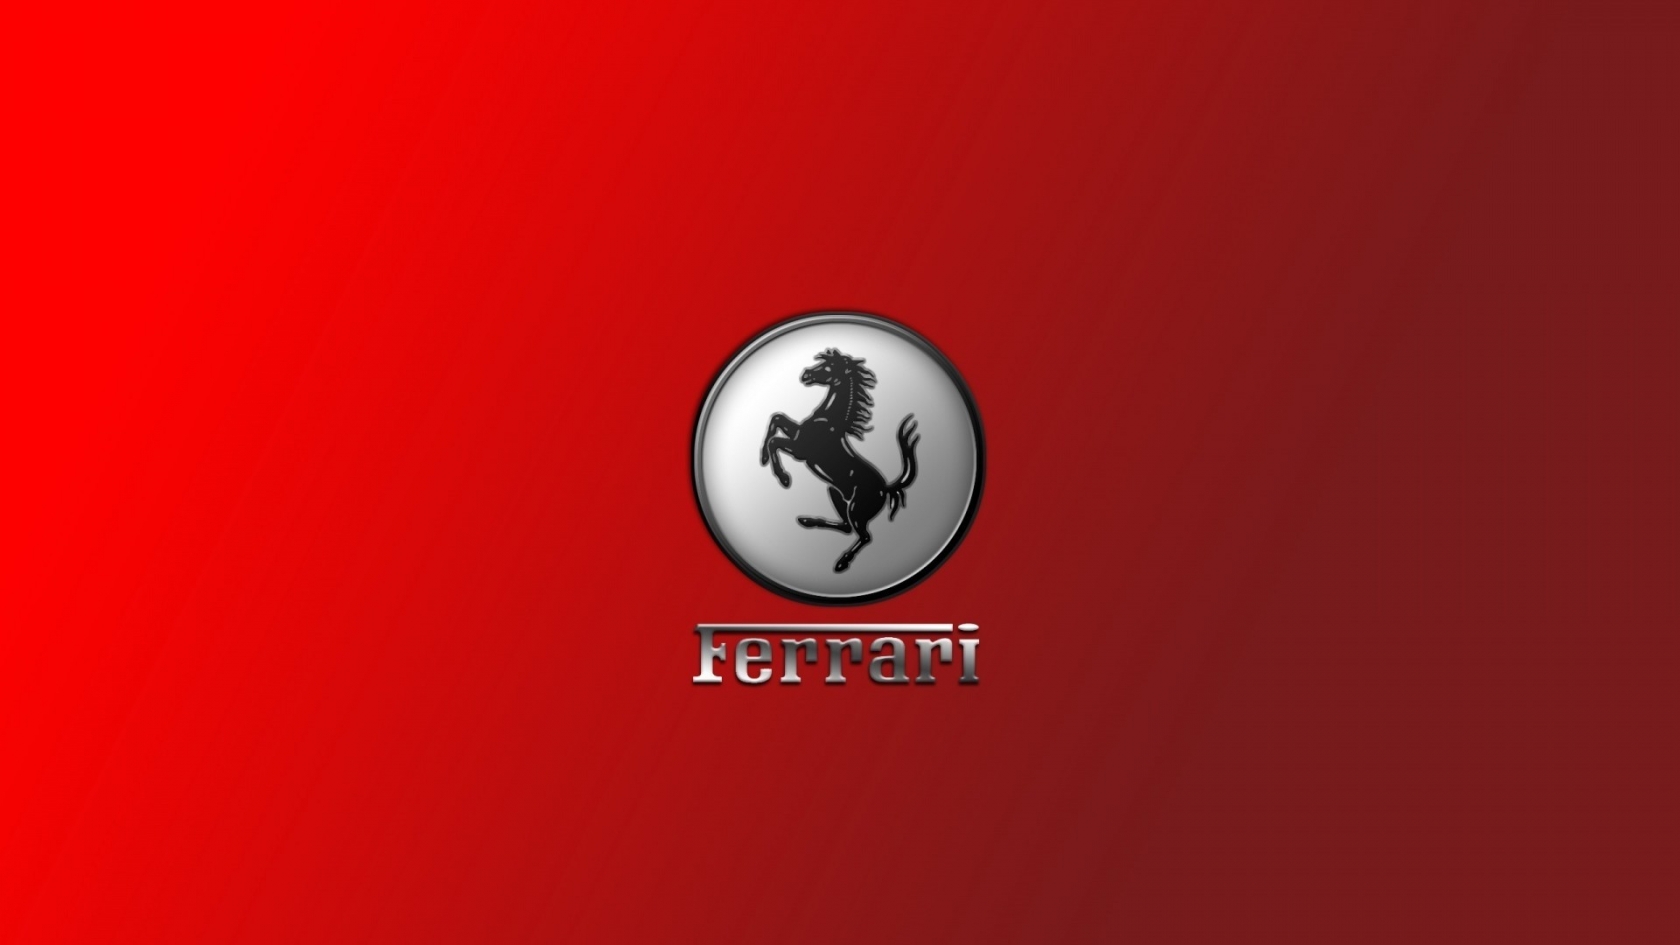 Gorgeous Ferrari Logo for 1680 x 945 HDTV resolution